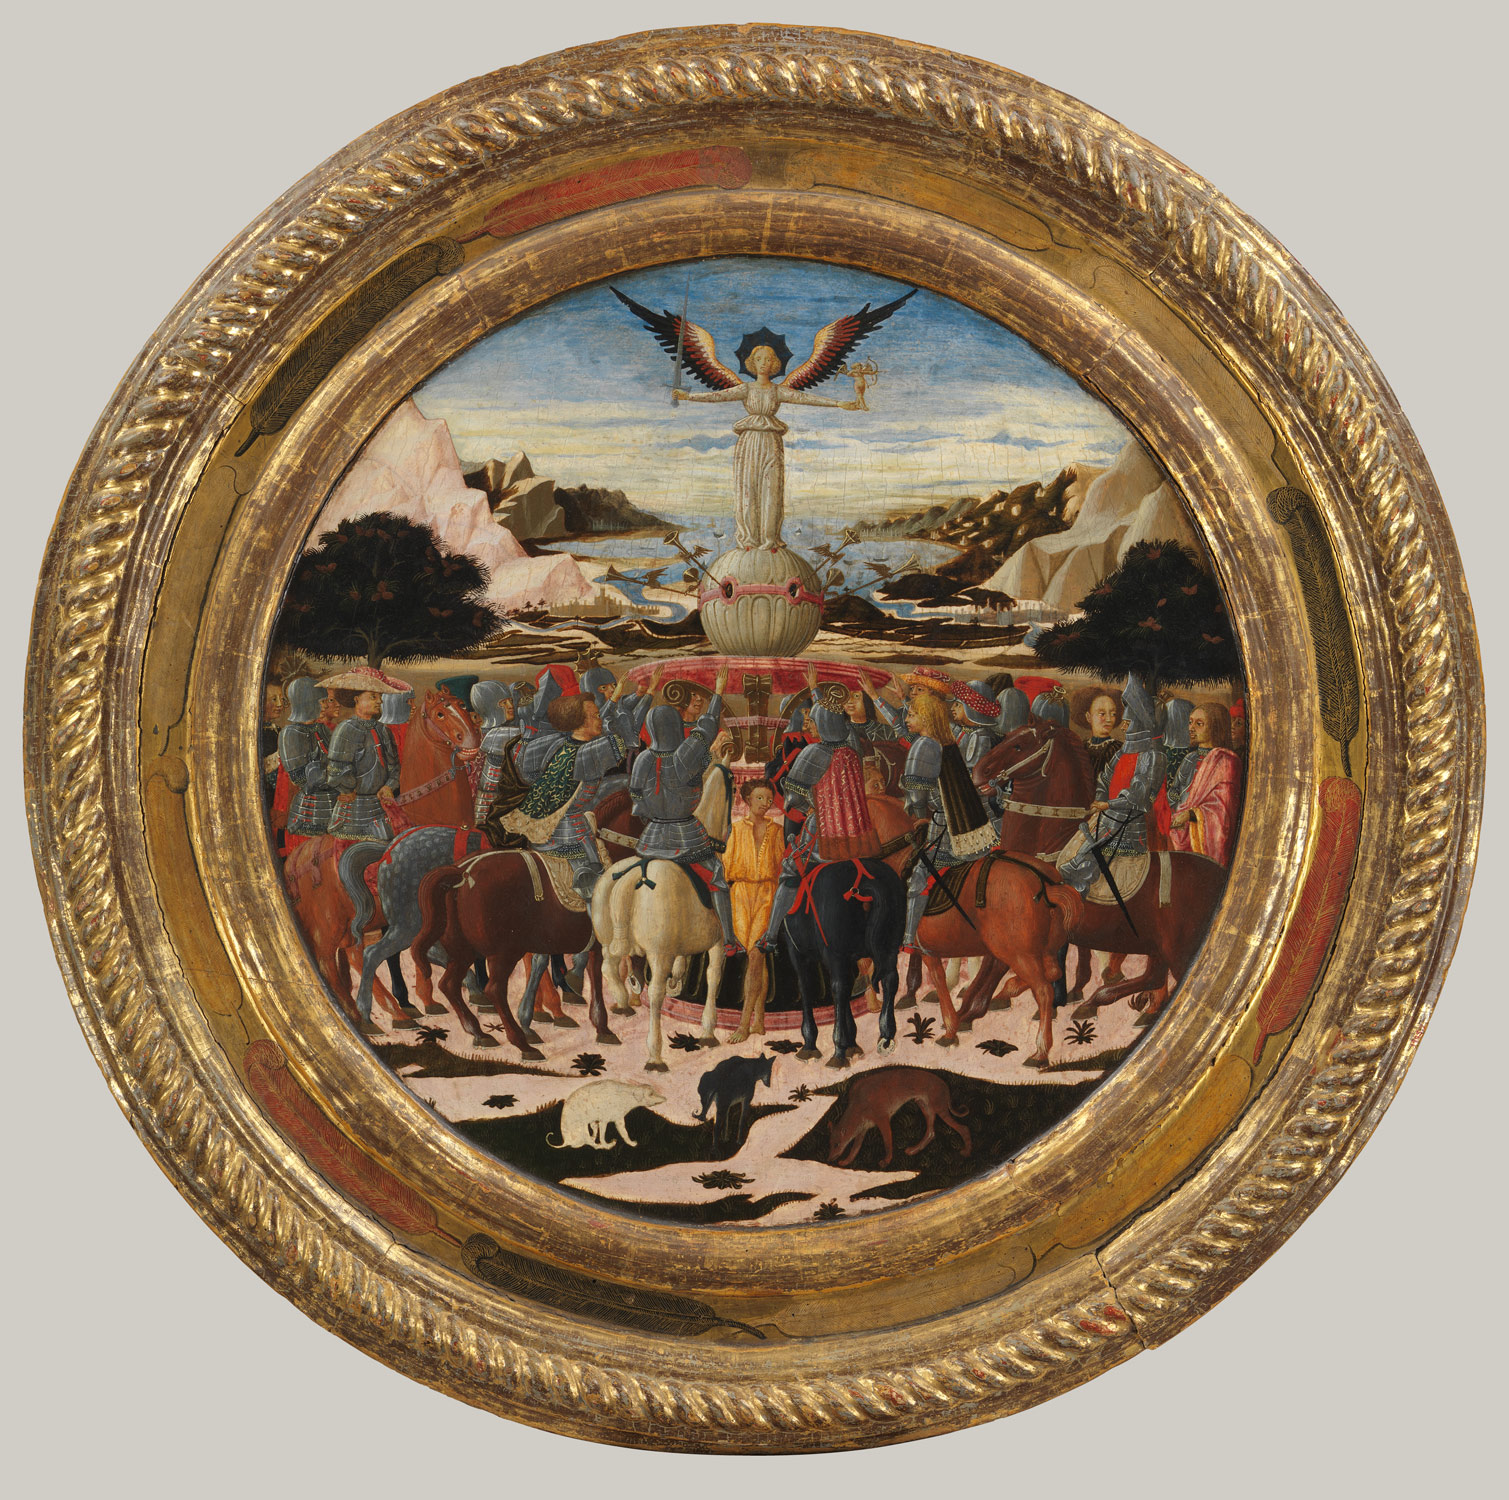 O triunfo da fama;  (reverso) Impresa da Família Medici e Armas das Famílias Medici e Tornabuoni